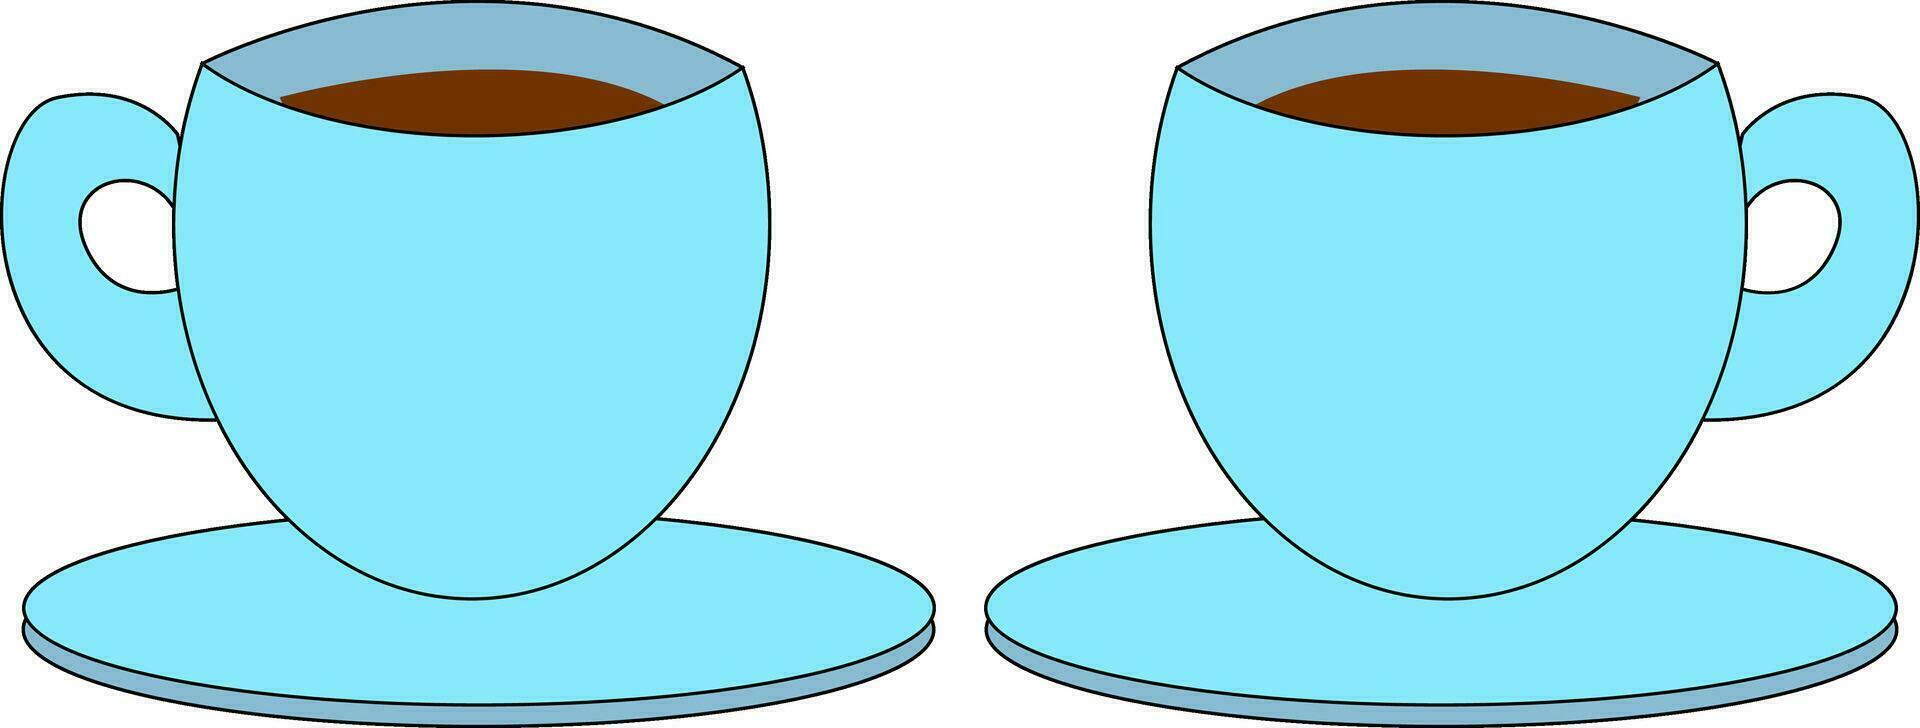 koffie kopjes, vector of kleur illustratie.